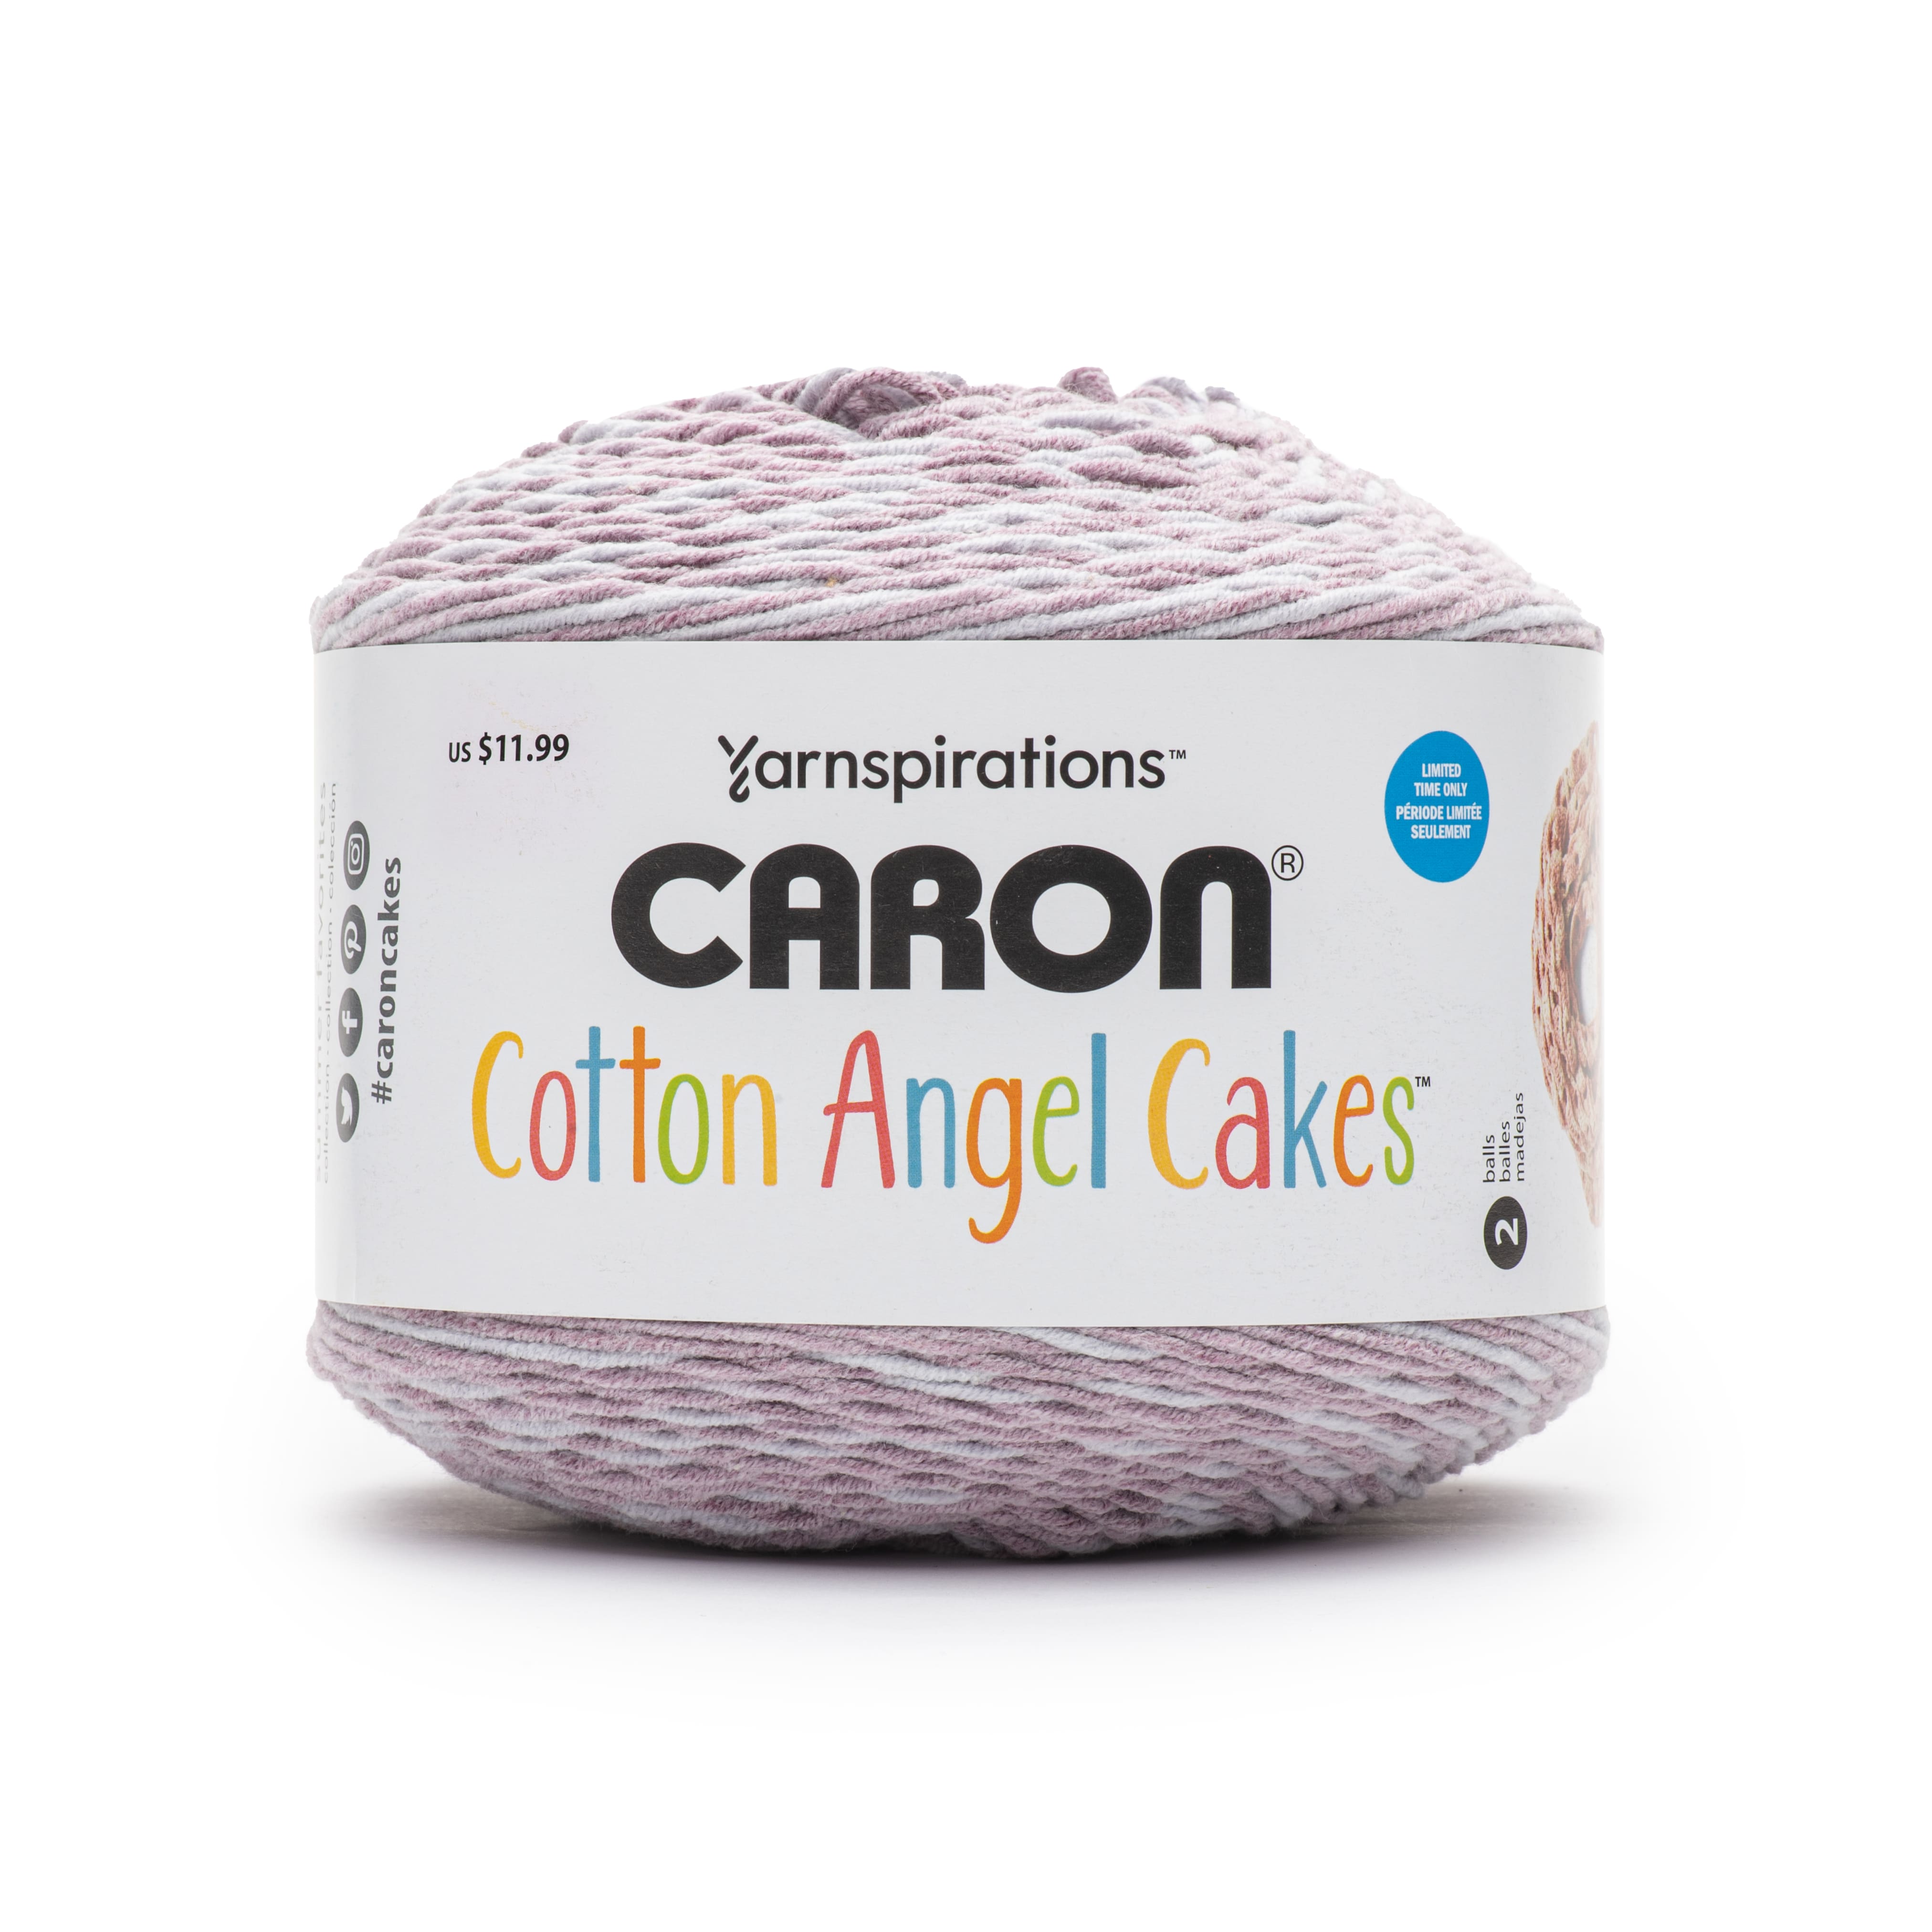 Caron Cotton Cakes 